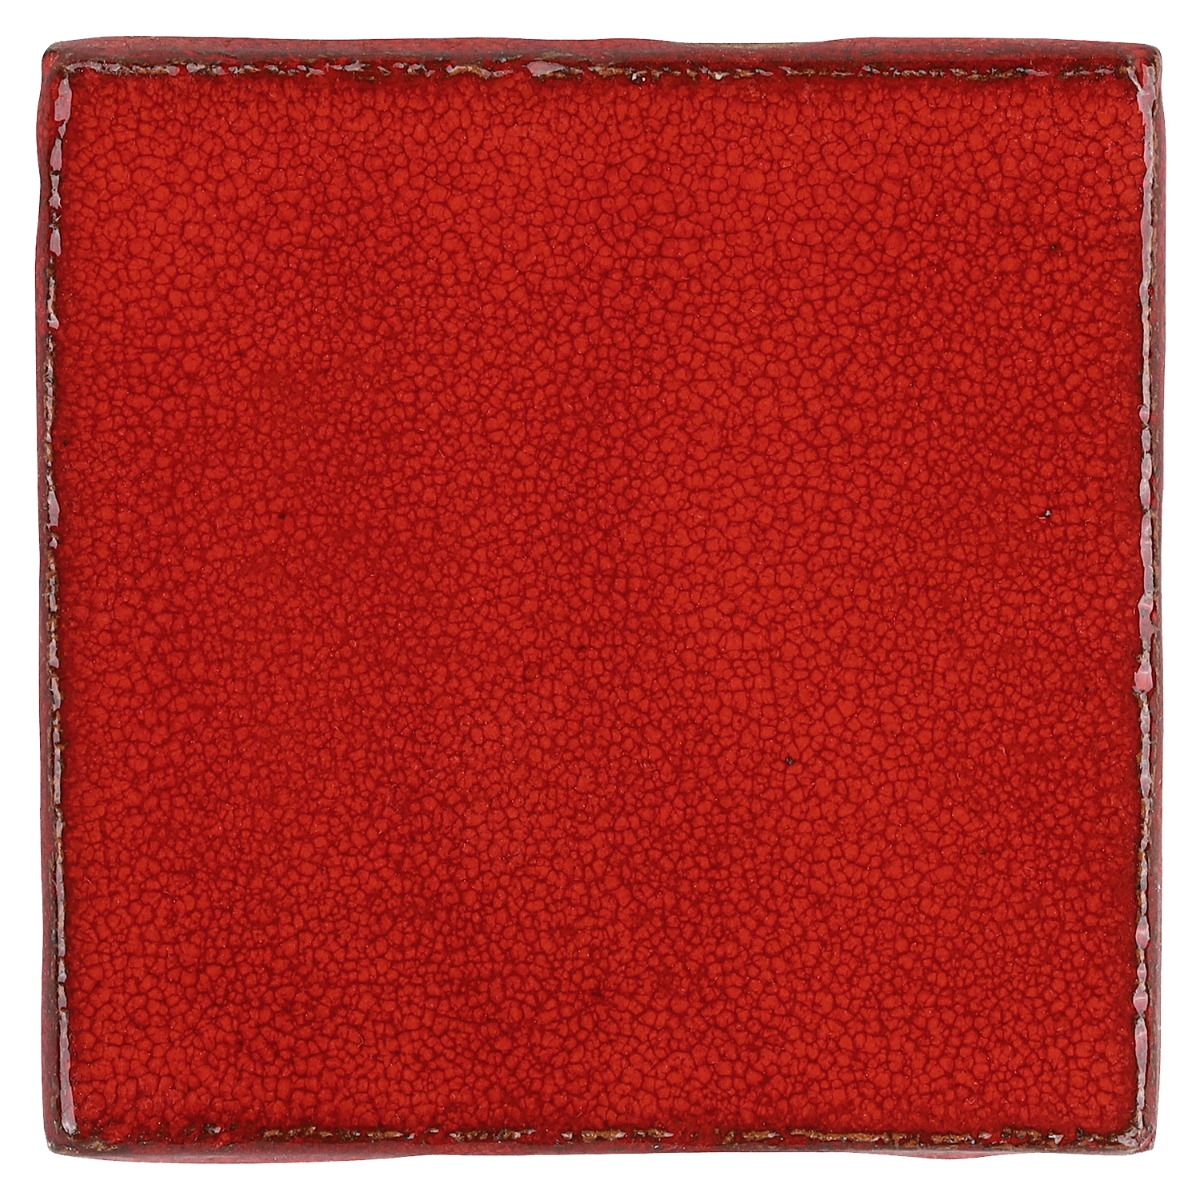 Emery Selenium Red 4x4 Crackled Handmade Crackled Terracotta Subway Tile